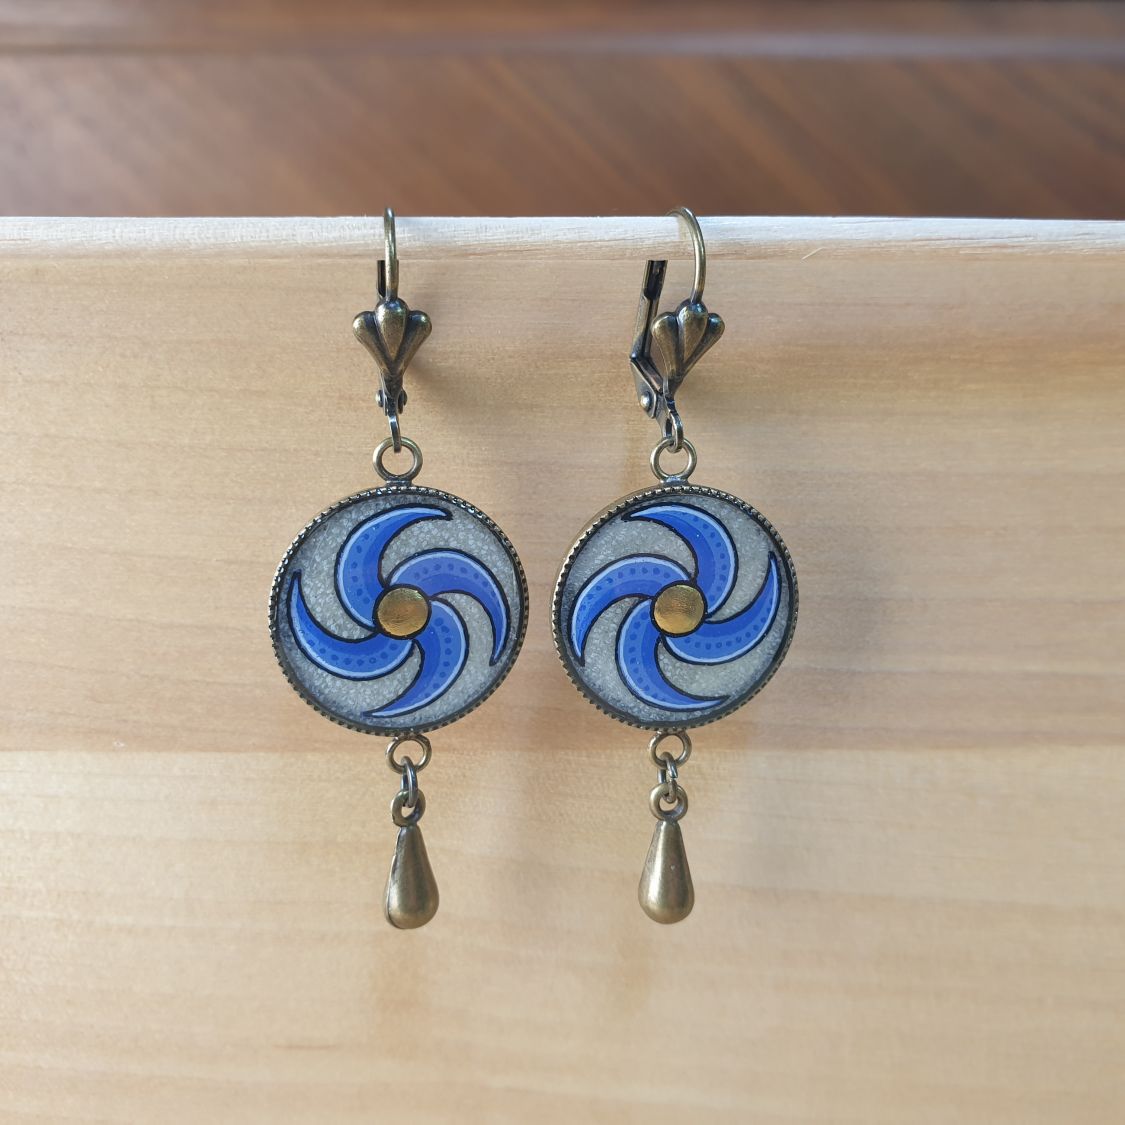 Boucles d'oreille pendantes enluminées spirale bleue